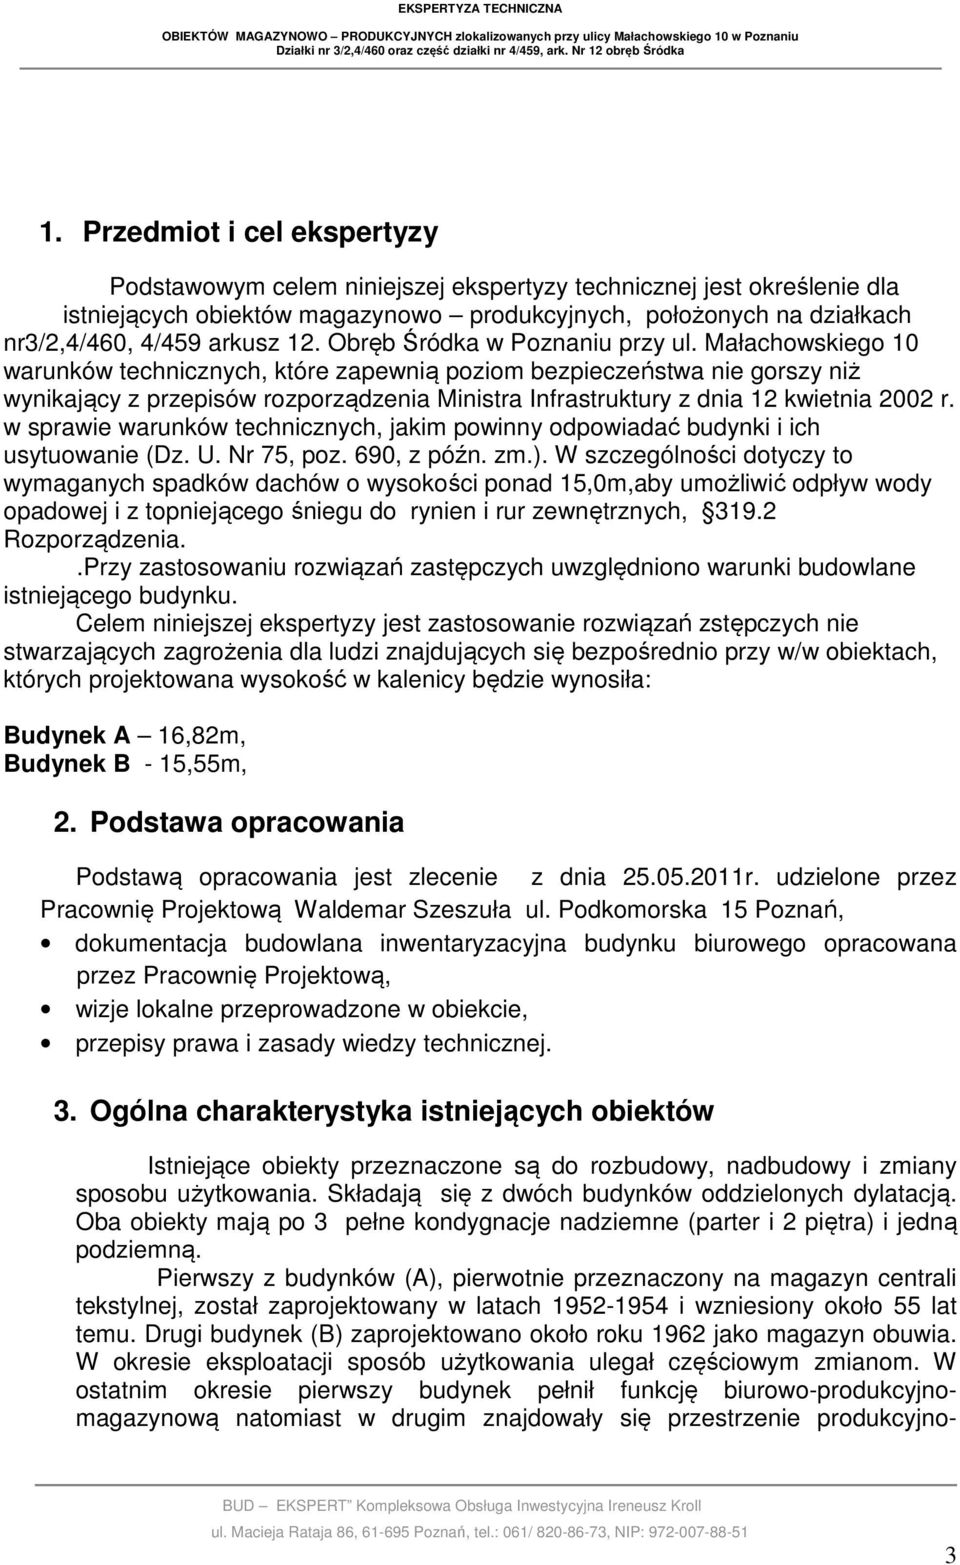 Małachowskiego 10 warunków technicznych, które zapewnią poziom bezpieczeństwa nie gorszy niż wynikający z przepisów rozporządzenia Ministra Infrastruktury z dnia 12 kwietnia 2002 r.